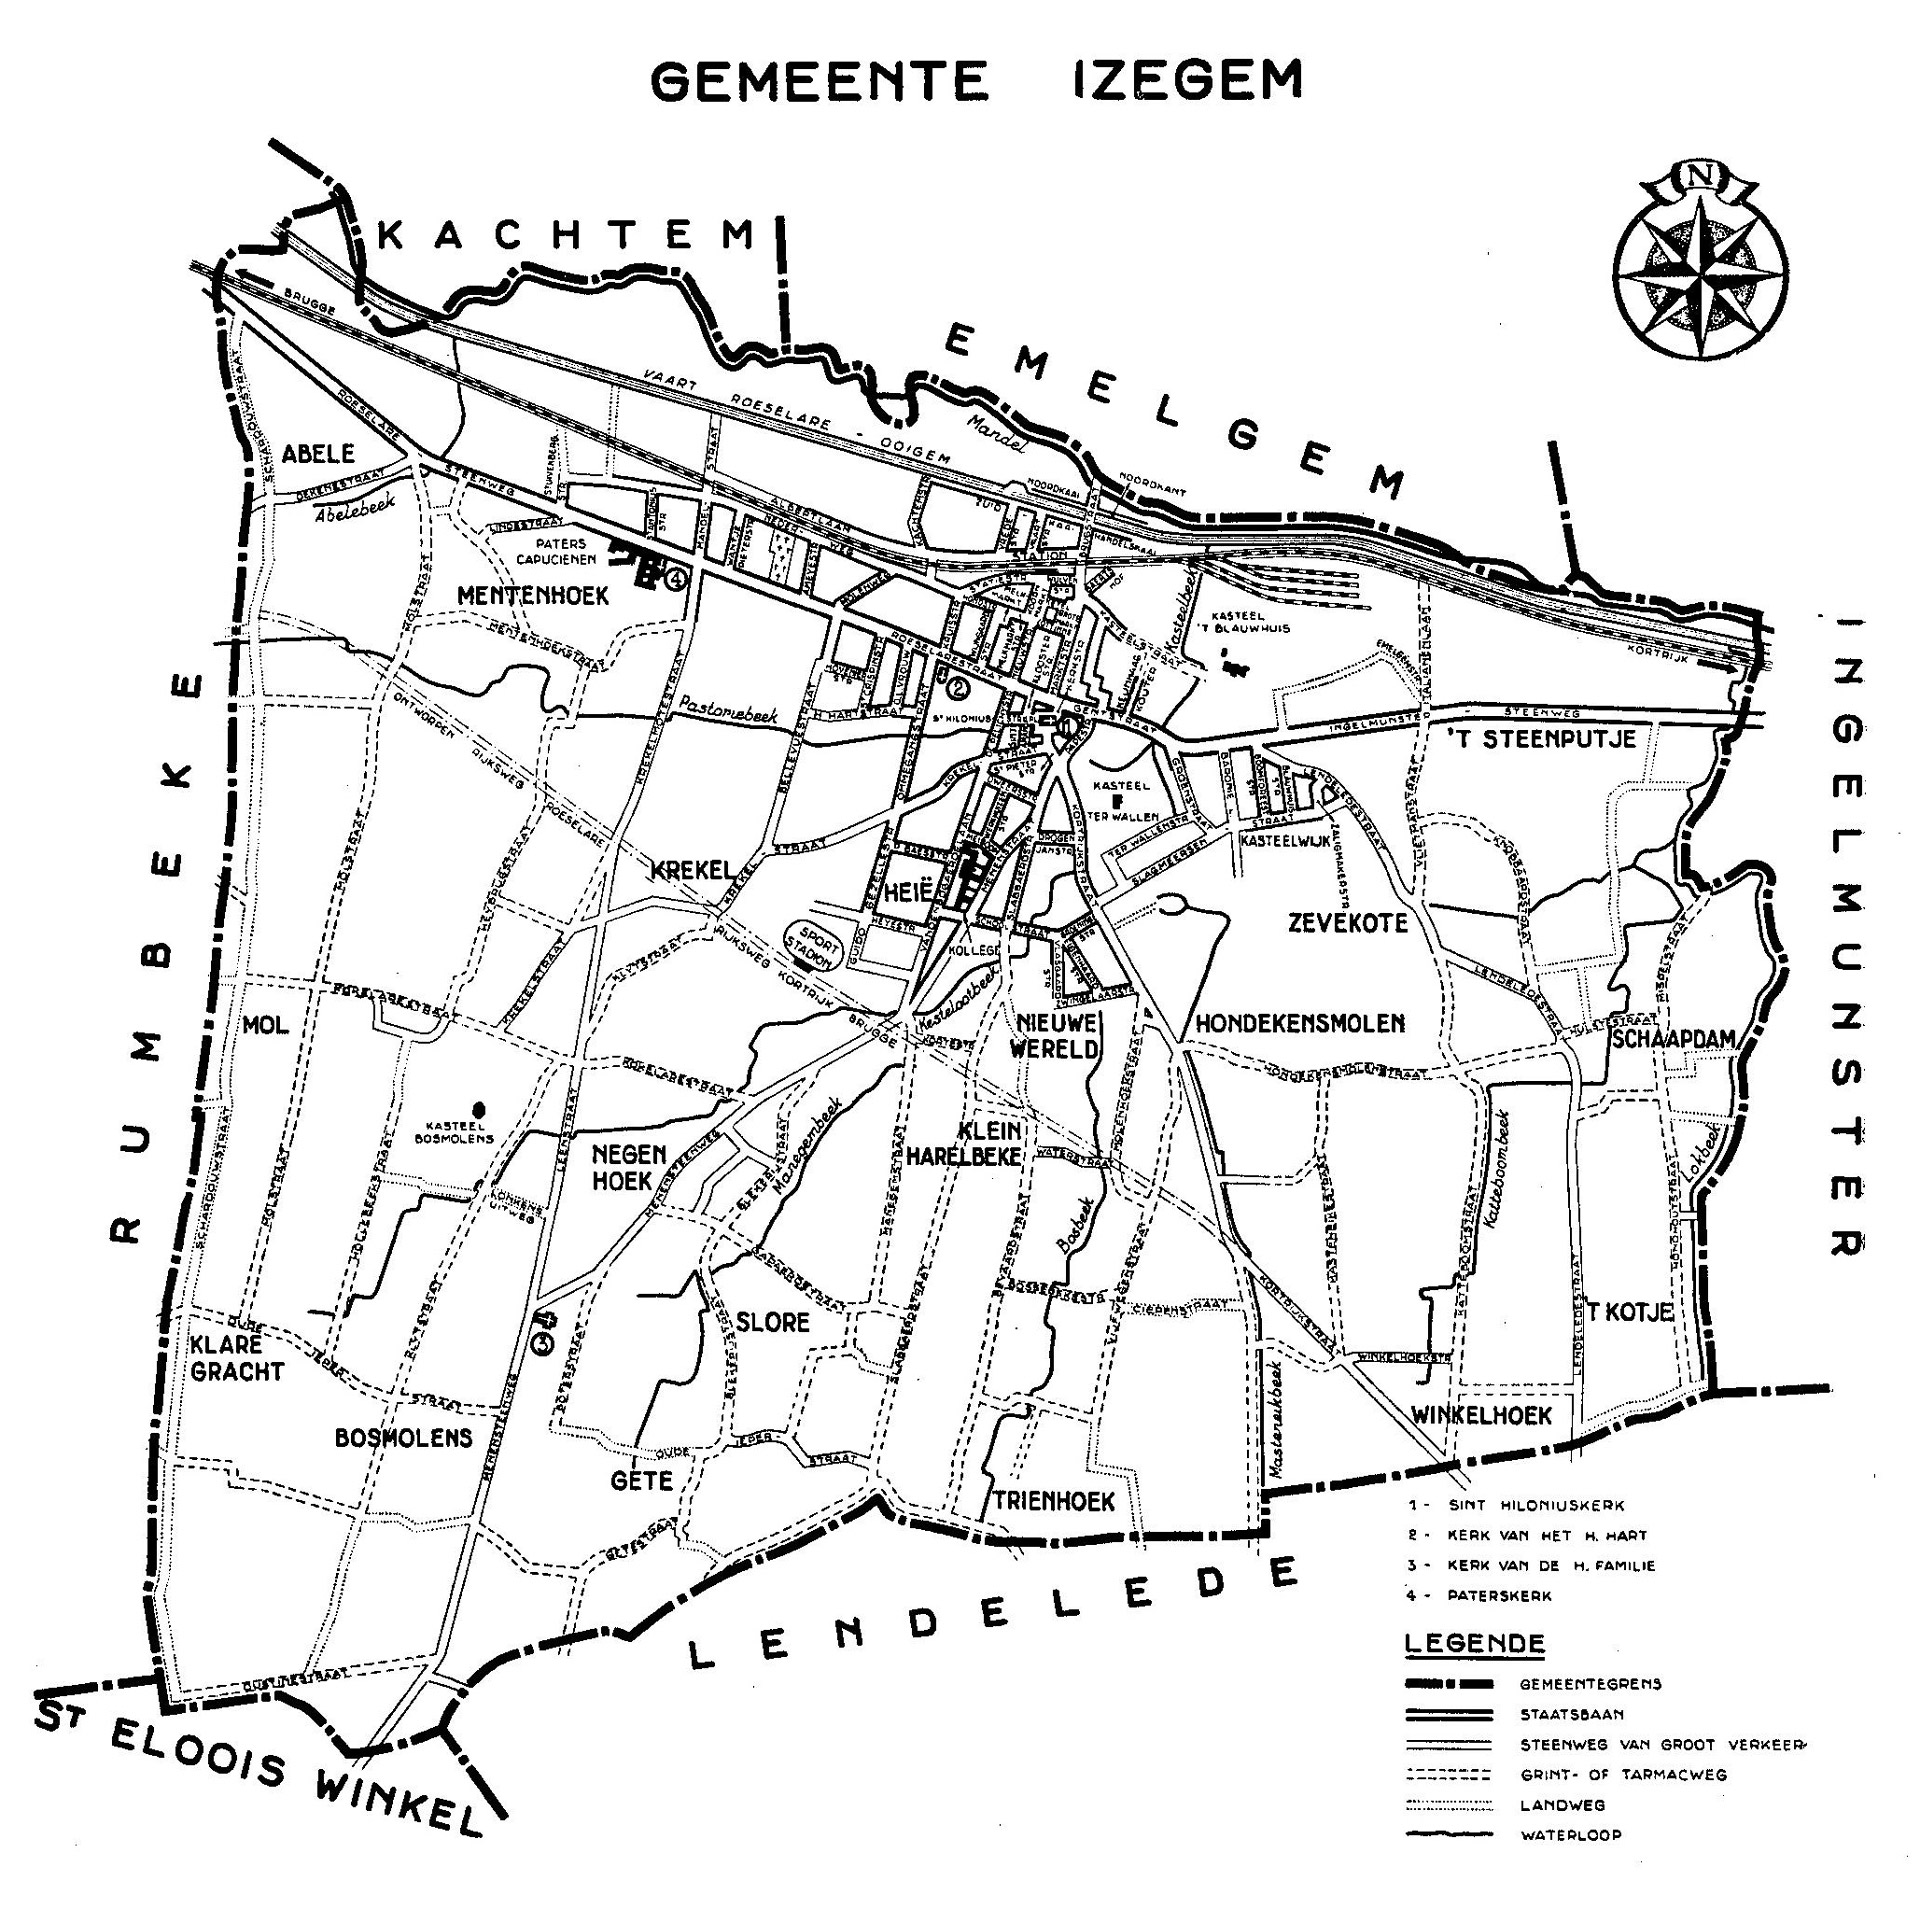 Plan de la commune d’Izegem (1959) │ Le camp des prisonniers italiens était situé dans le parc du « Kasteel Bosmolens ». Le couvent des Pères Capucins (« Paters Capucienen ») est indiqué par le numéro 4 │ Source : Dit is West-Vlaanderen. Steden – Gemeenten - Bevolking, Deel 1, St-Andries, Flandria, 1959, p.636.